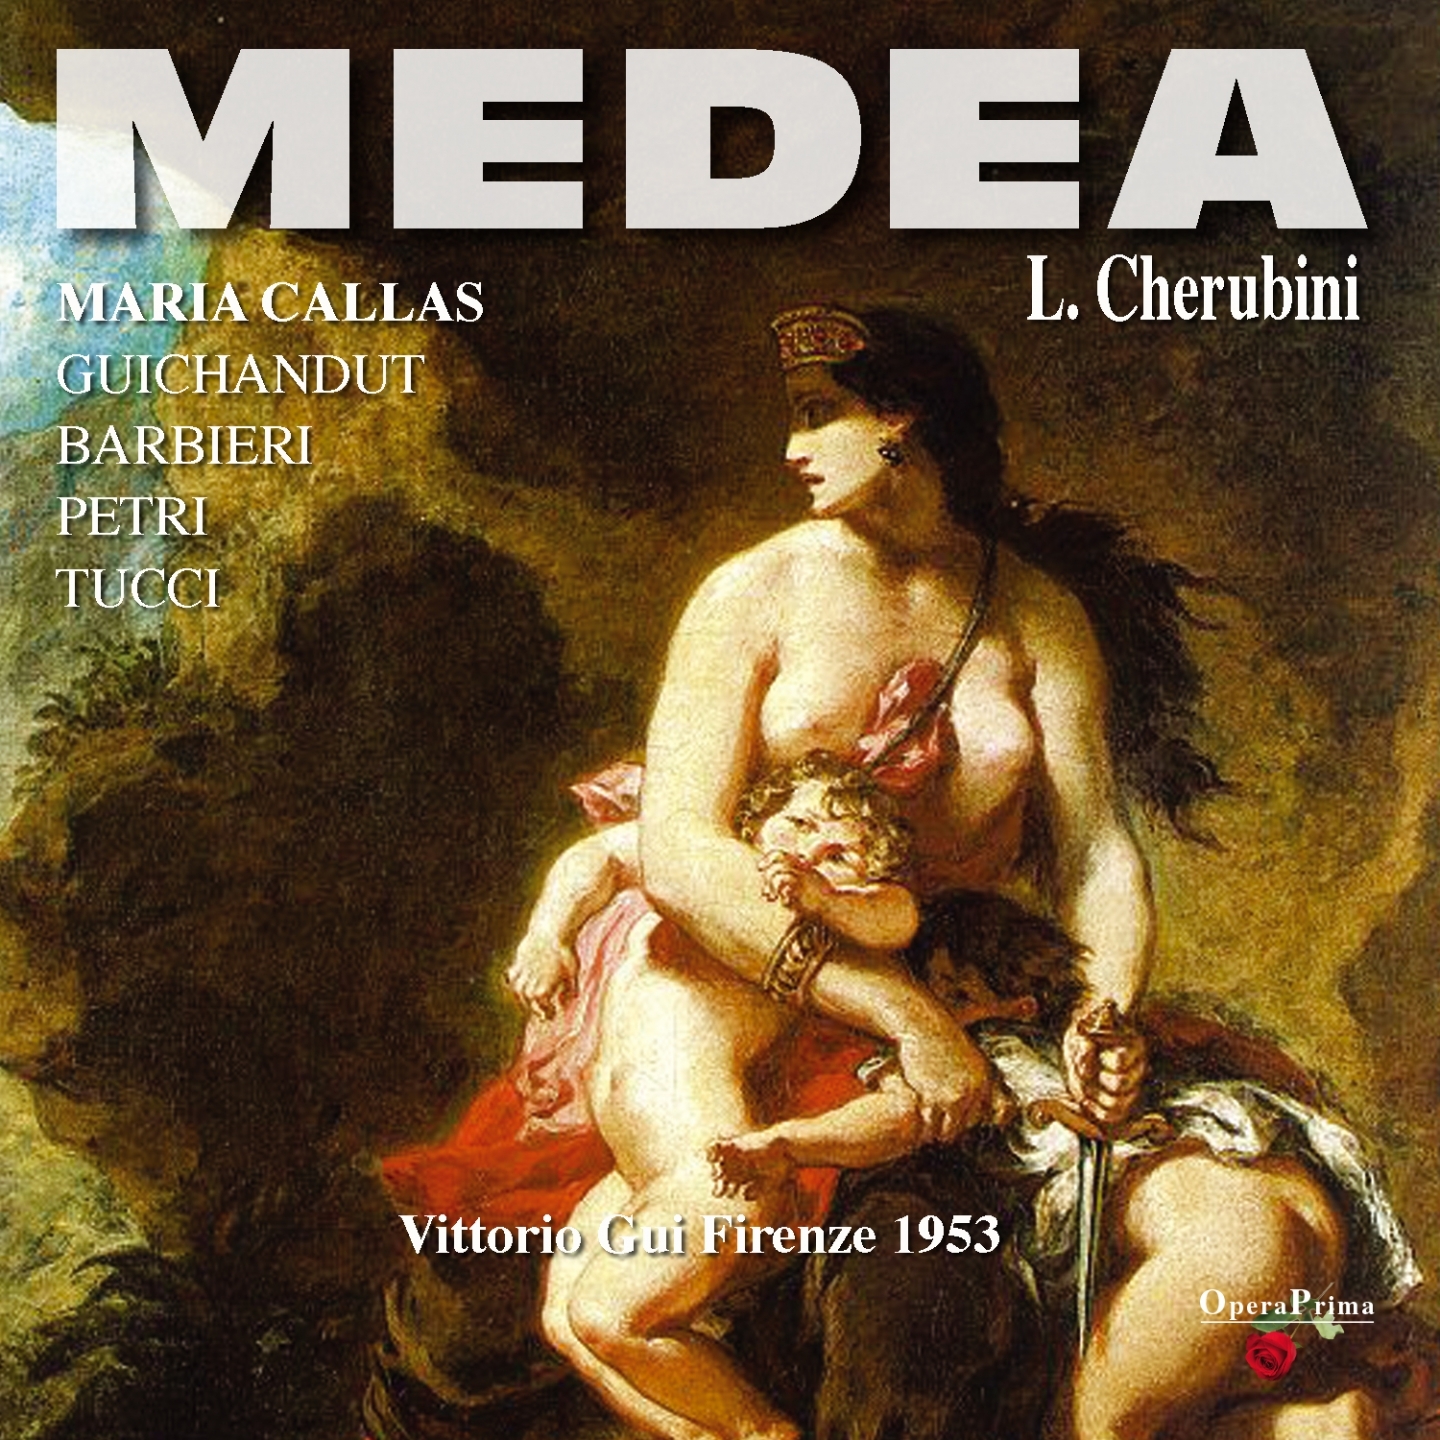 Medea : Act III - "Numi, venite a me, inferni Dei!"